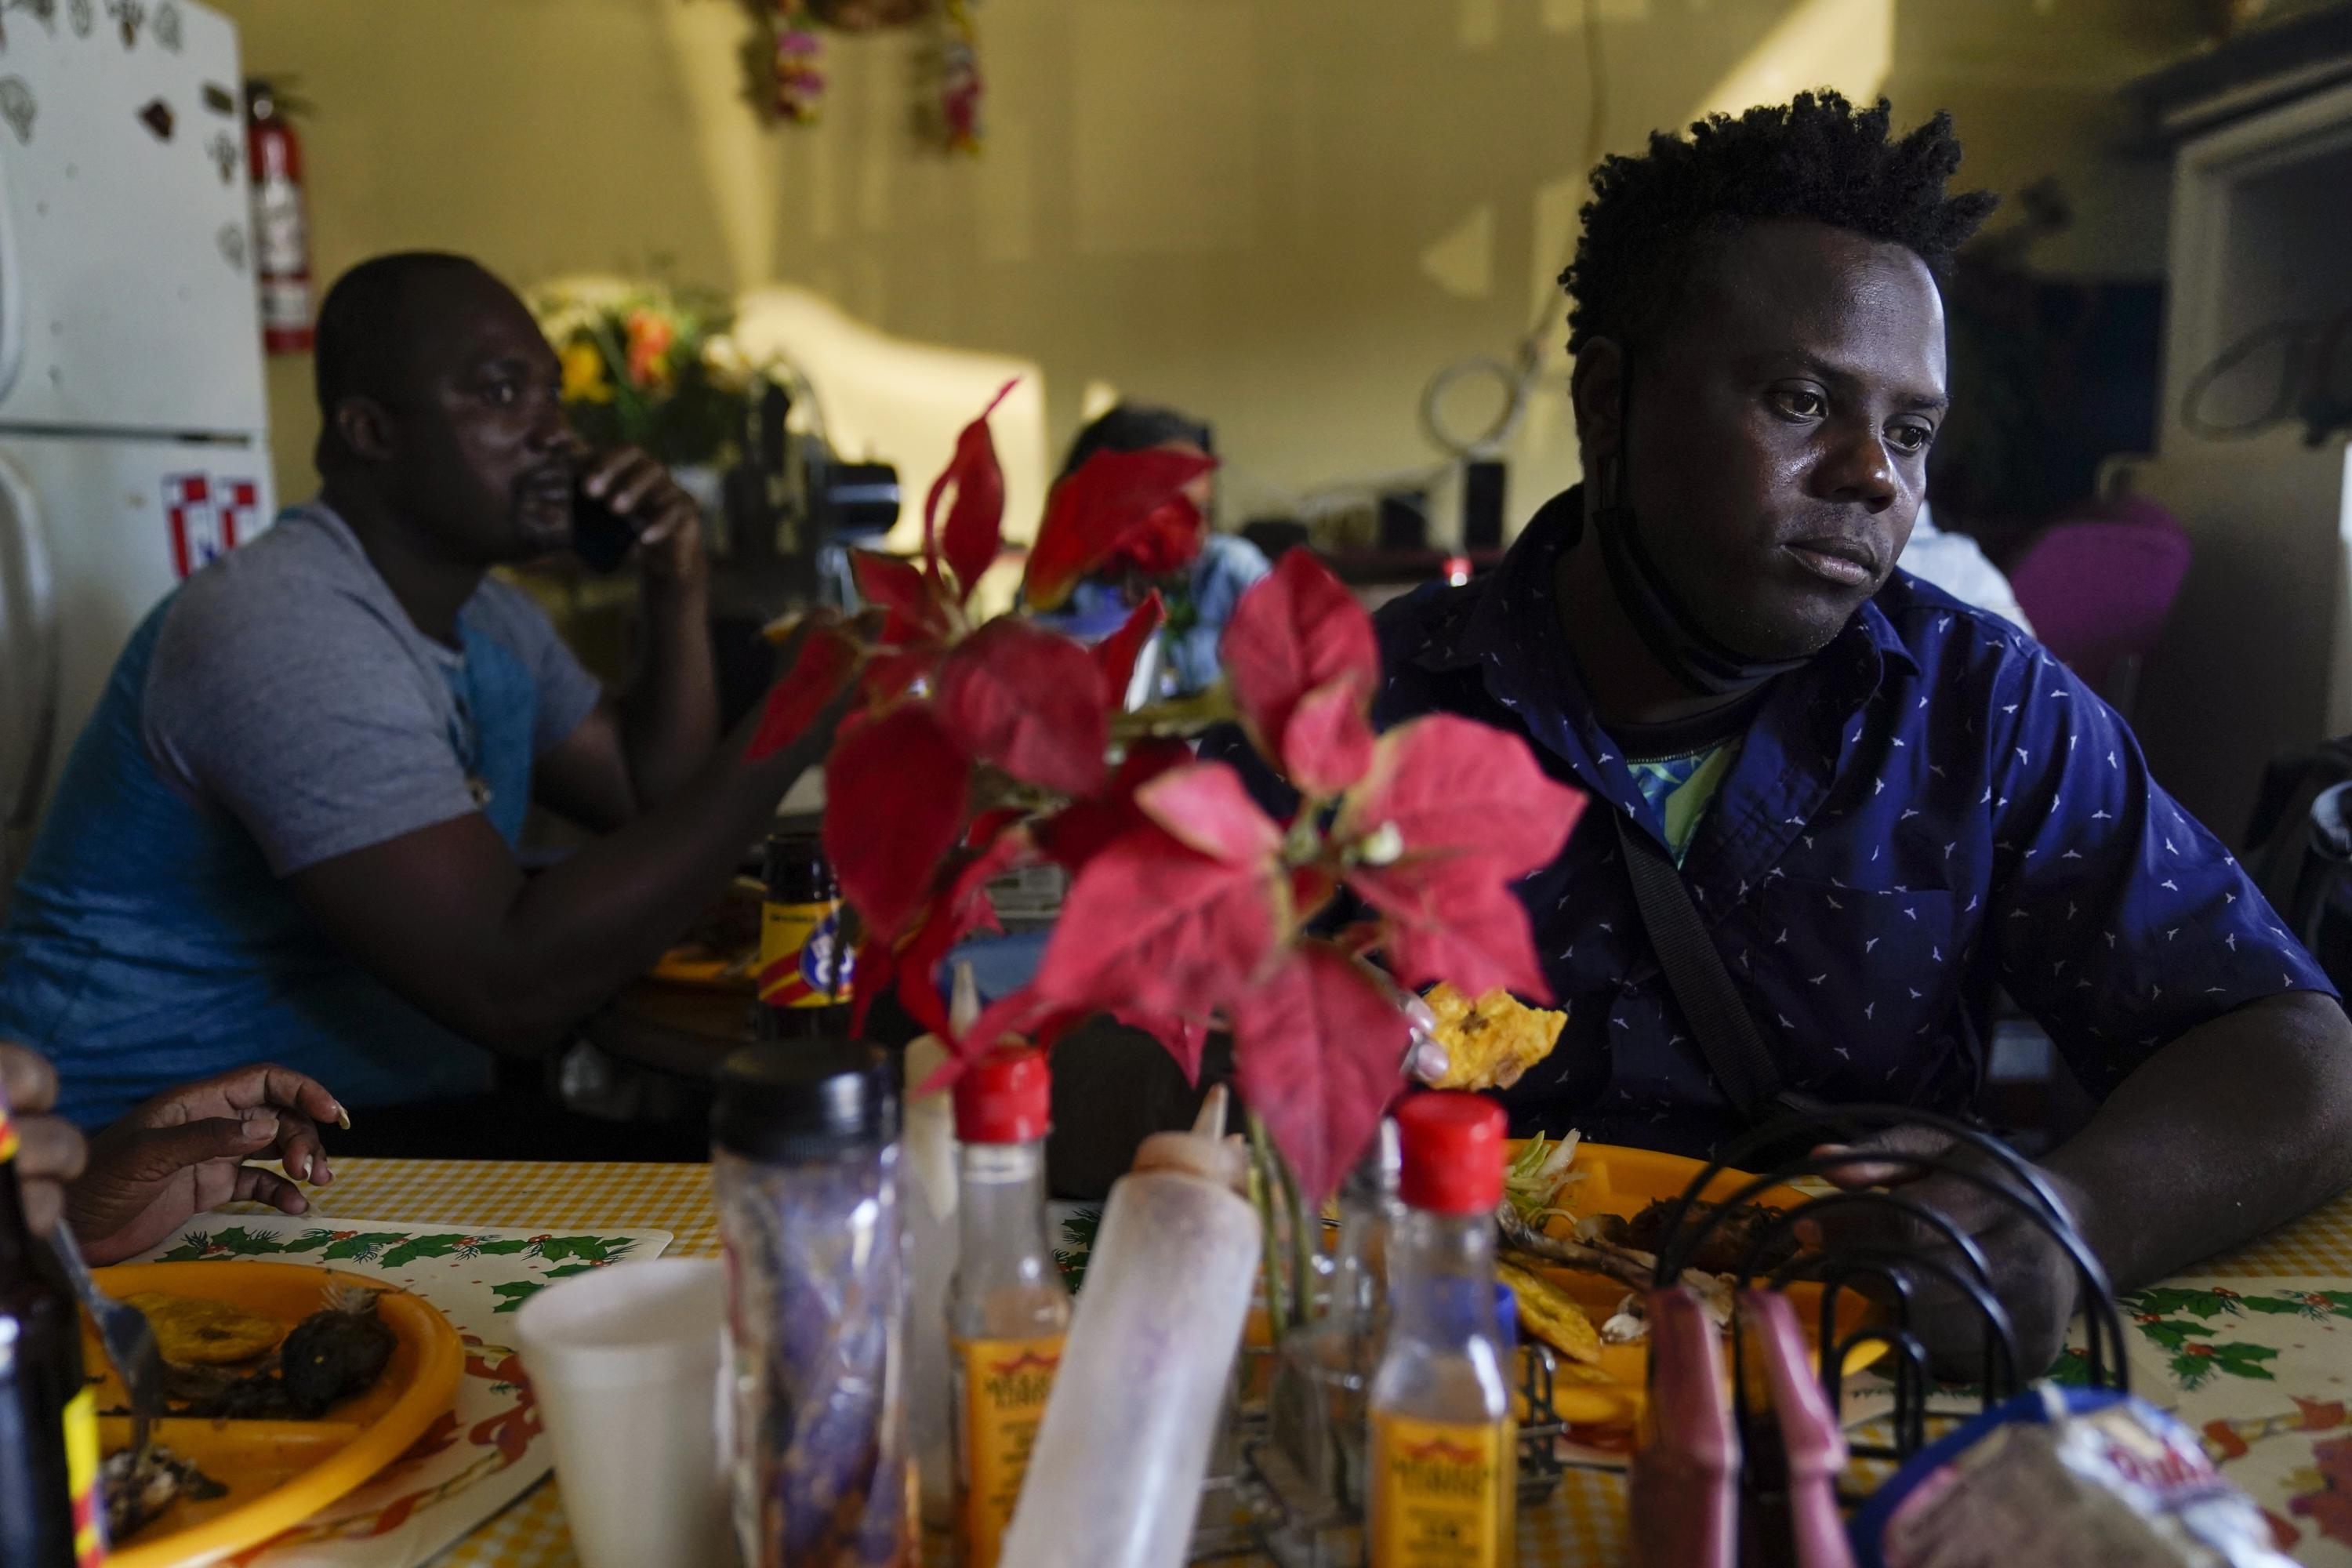 El viaje de los haitianos a la frontera de Texas a menudo comienza en América del Sur